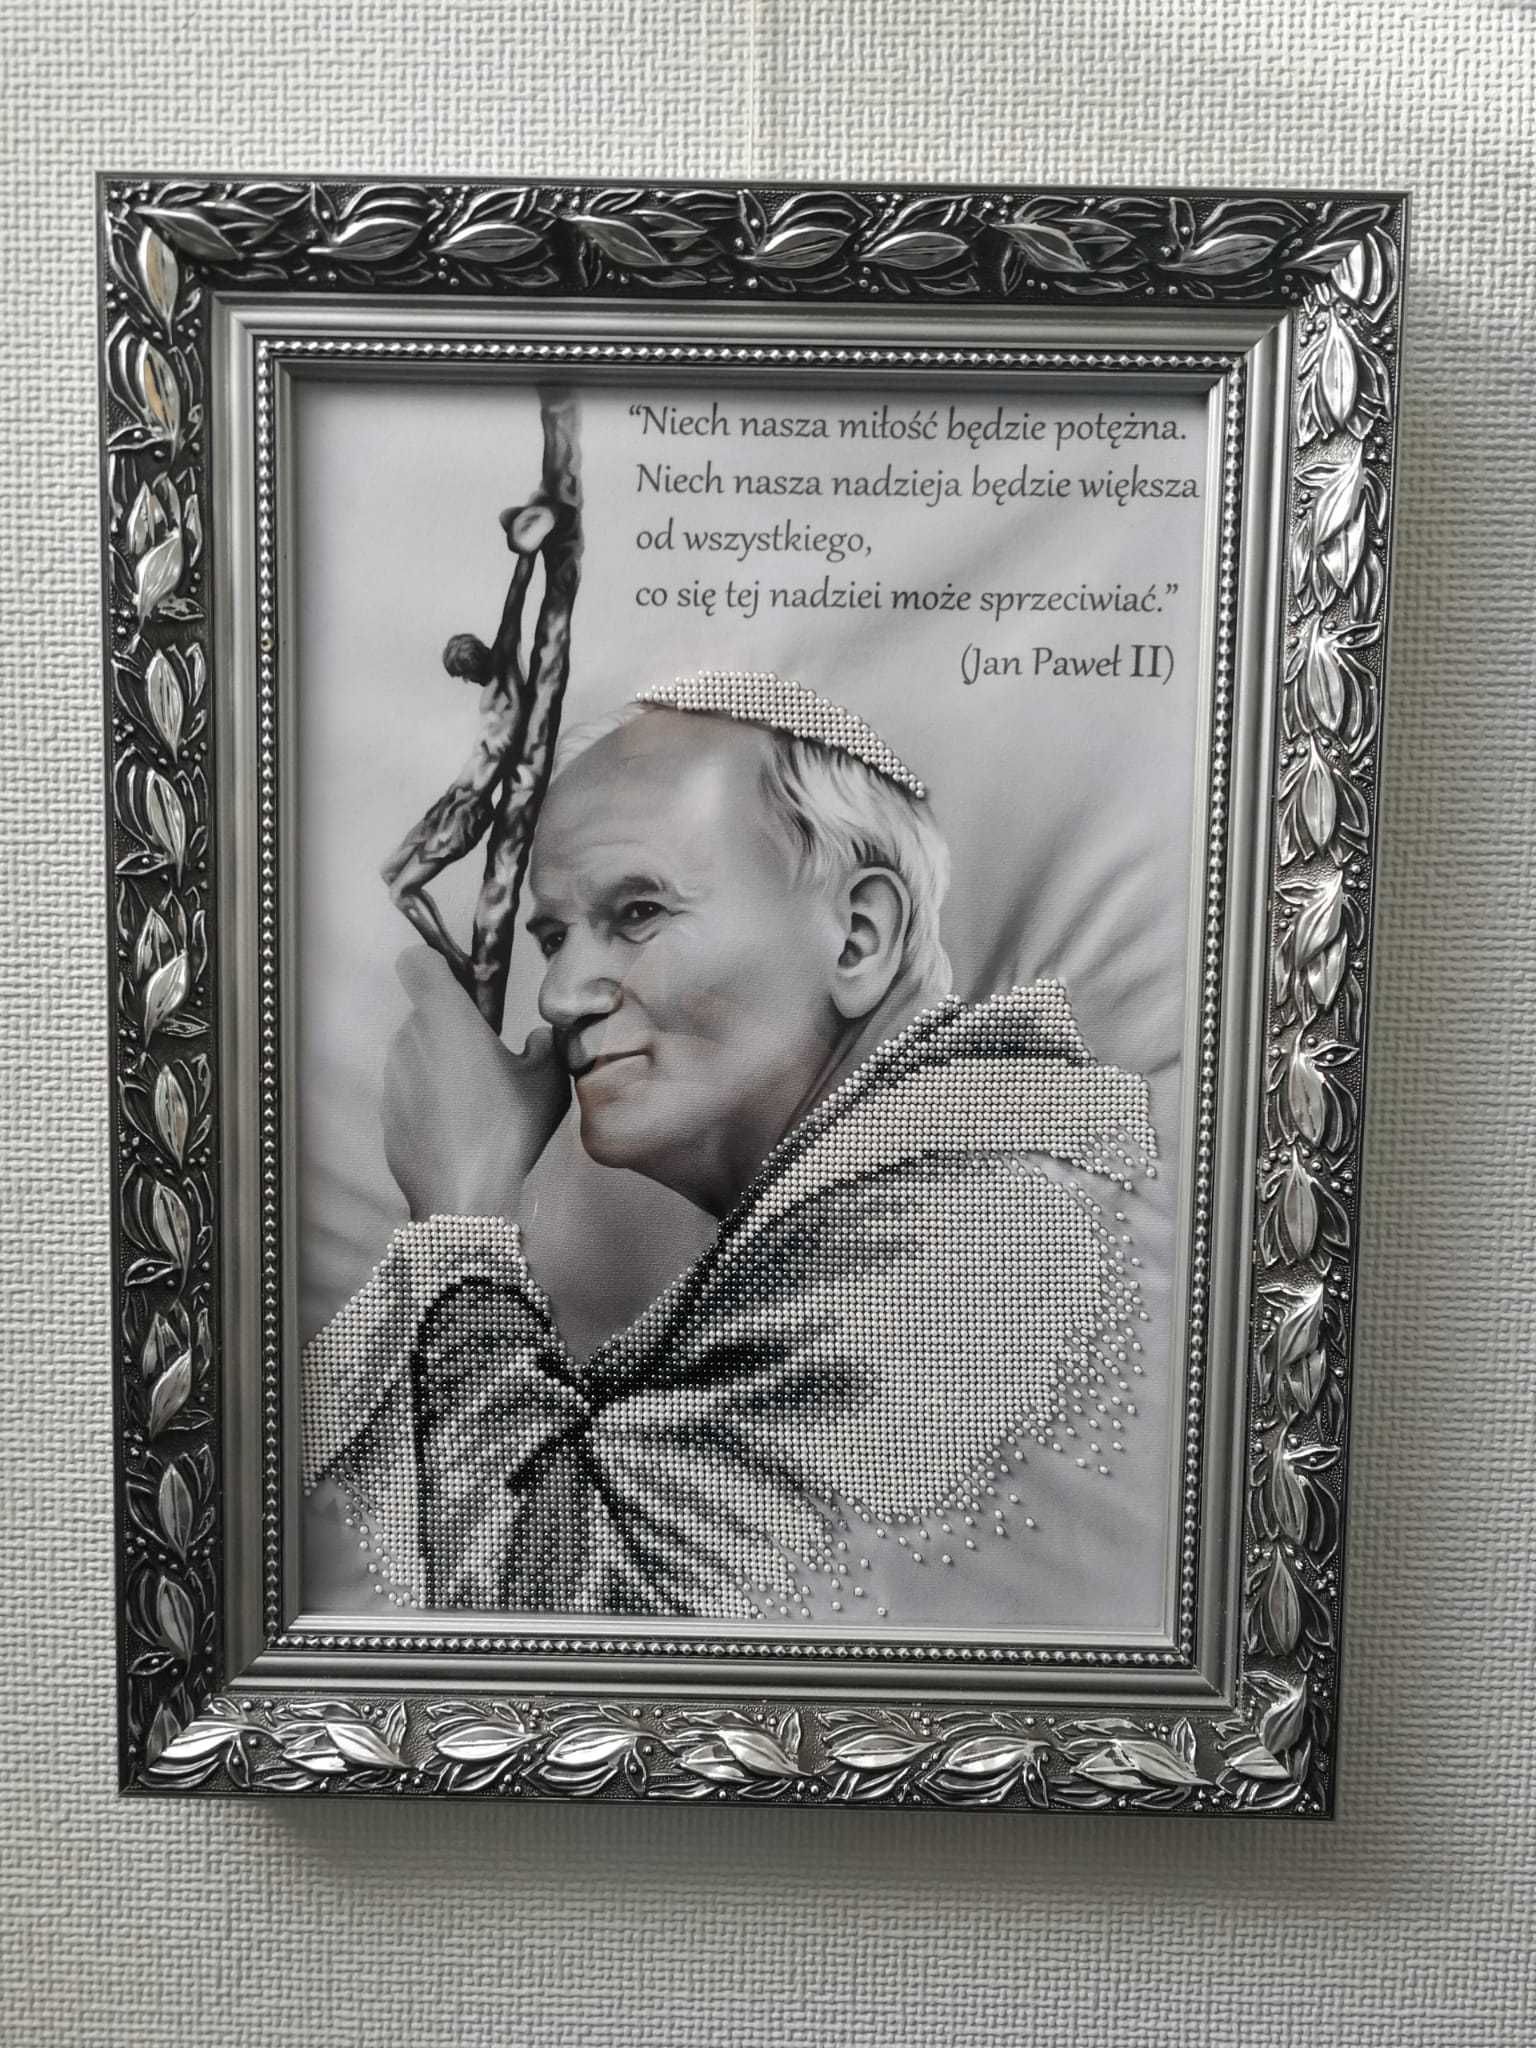 Obraz wyhaftowany koralikami. Papież Jan Paweł II.